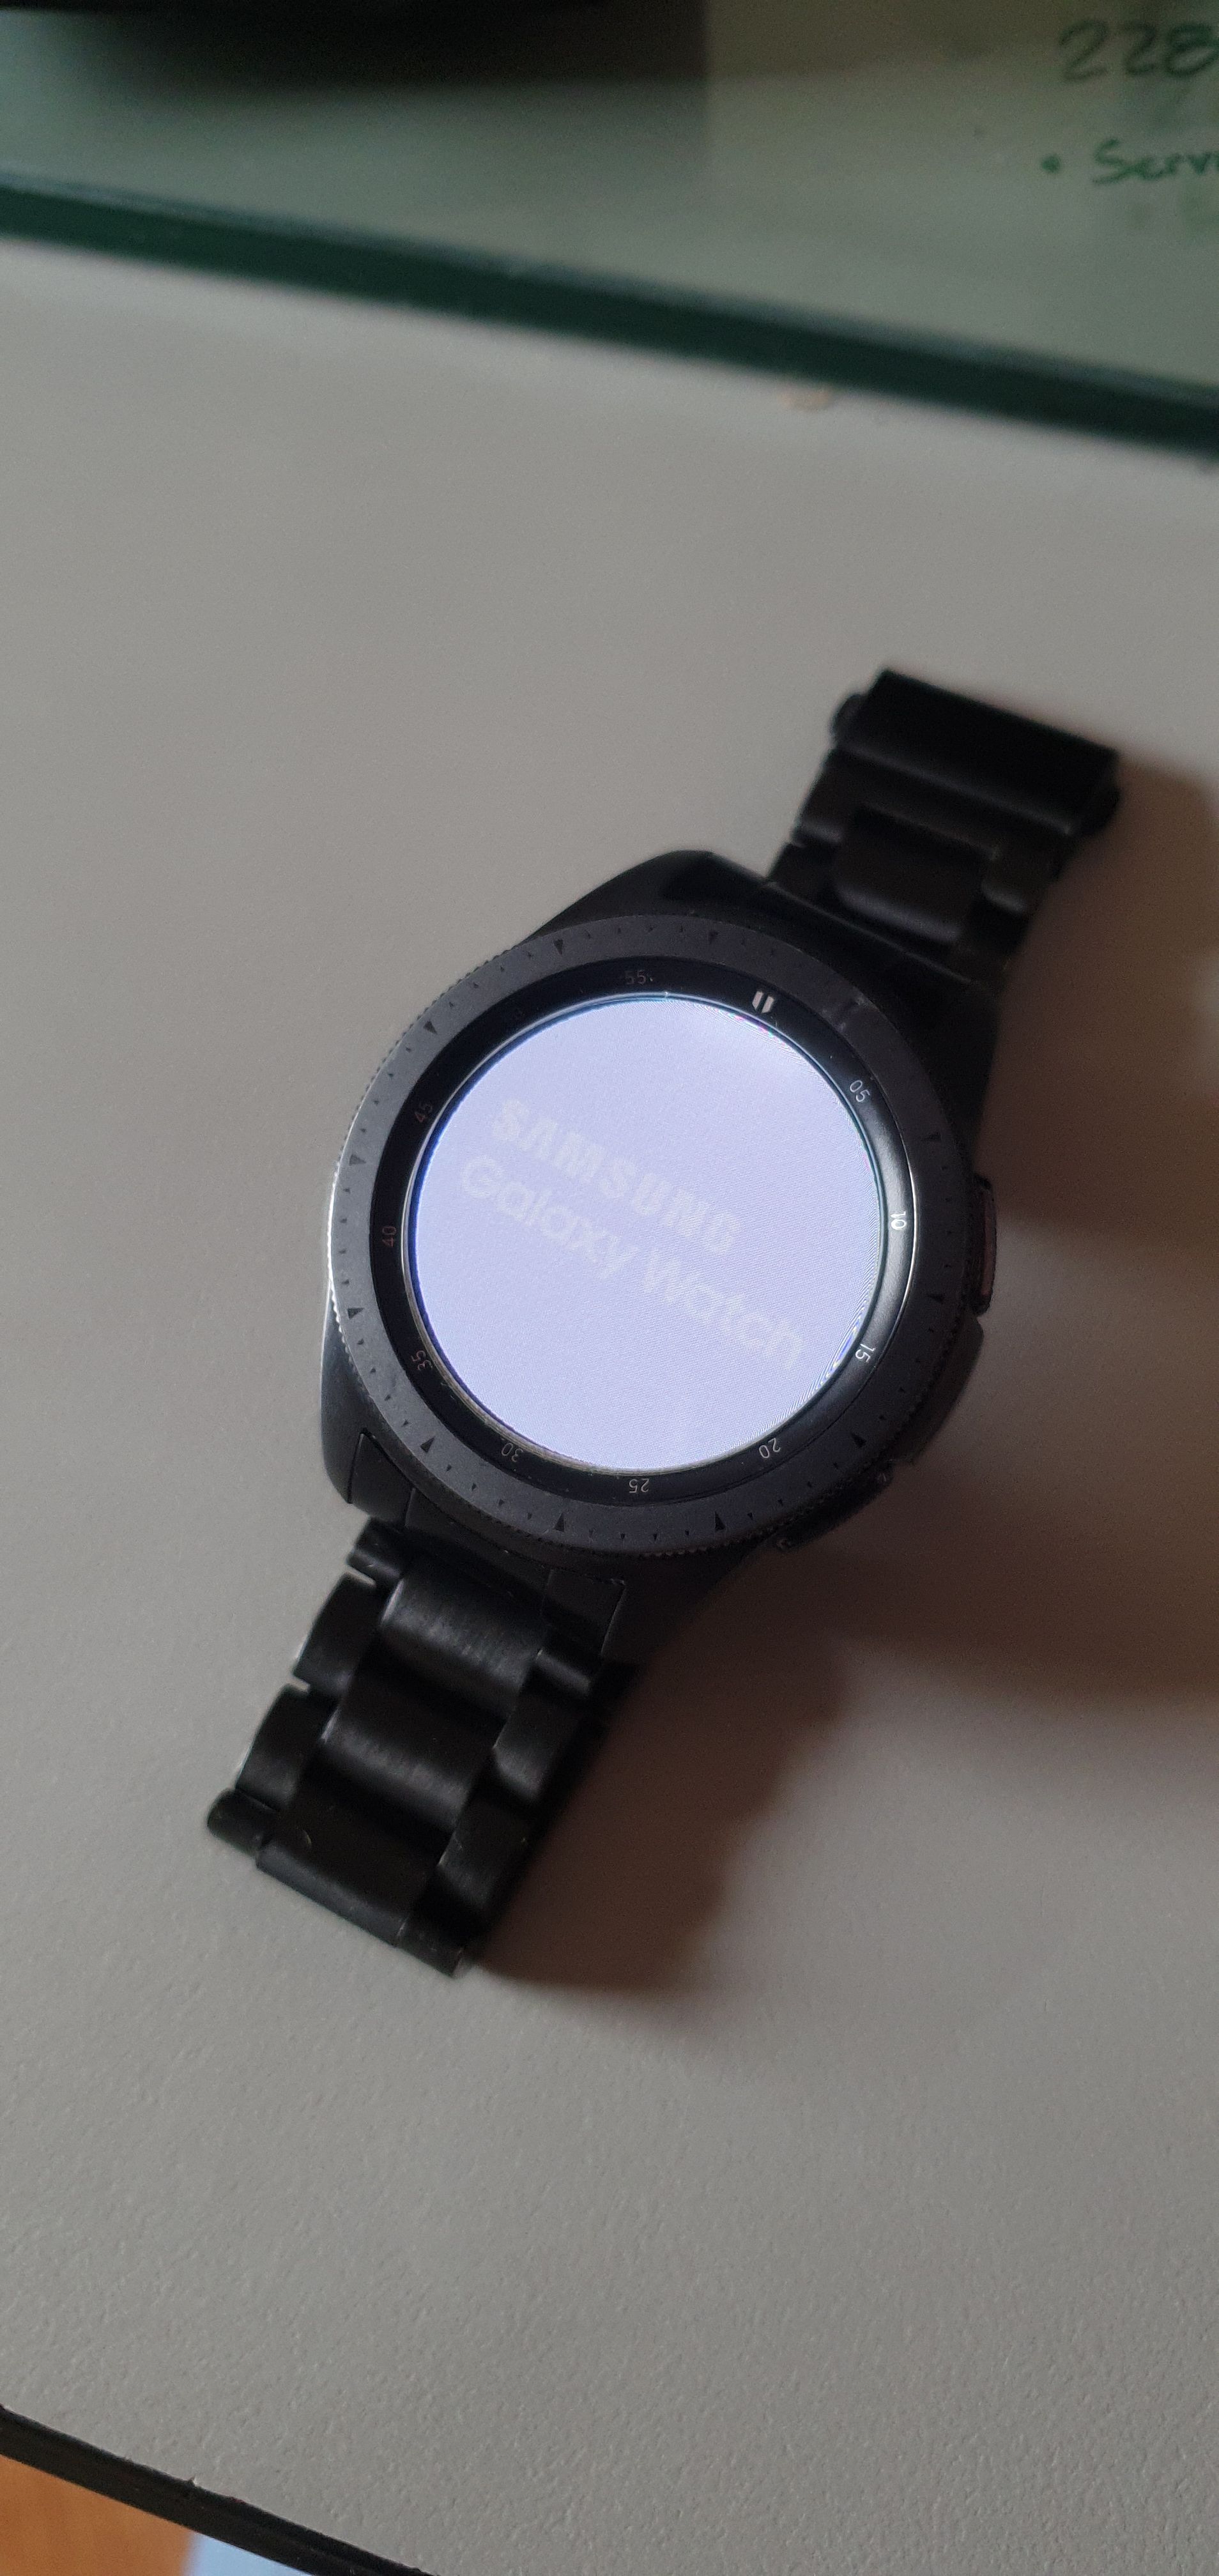 Solucionado: Reparación Galaxy Watch en Garantía con humedad - Samsung  Community